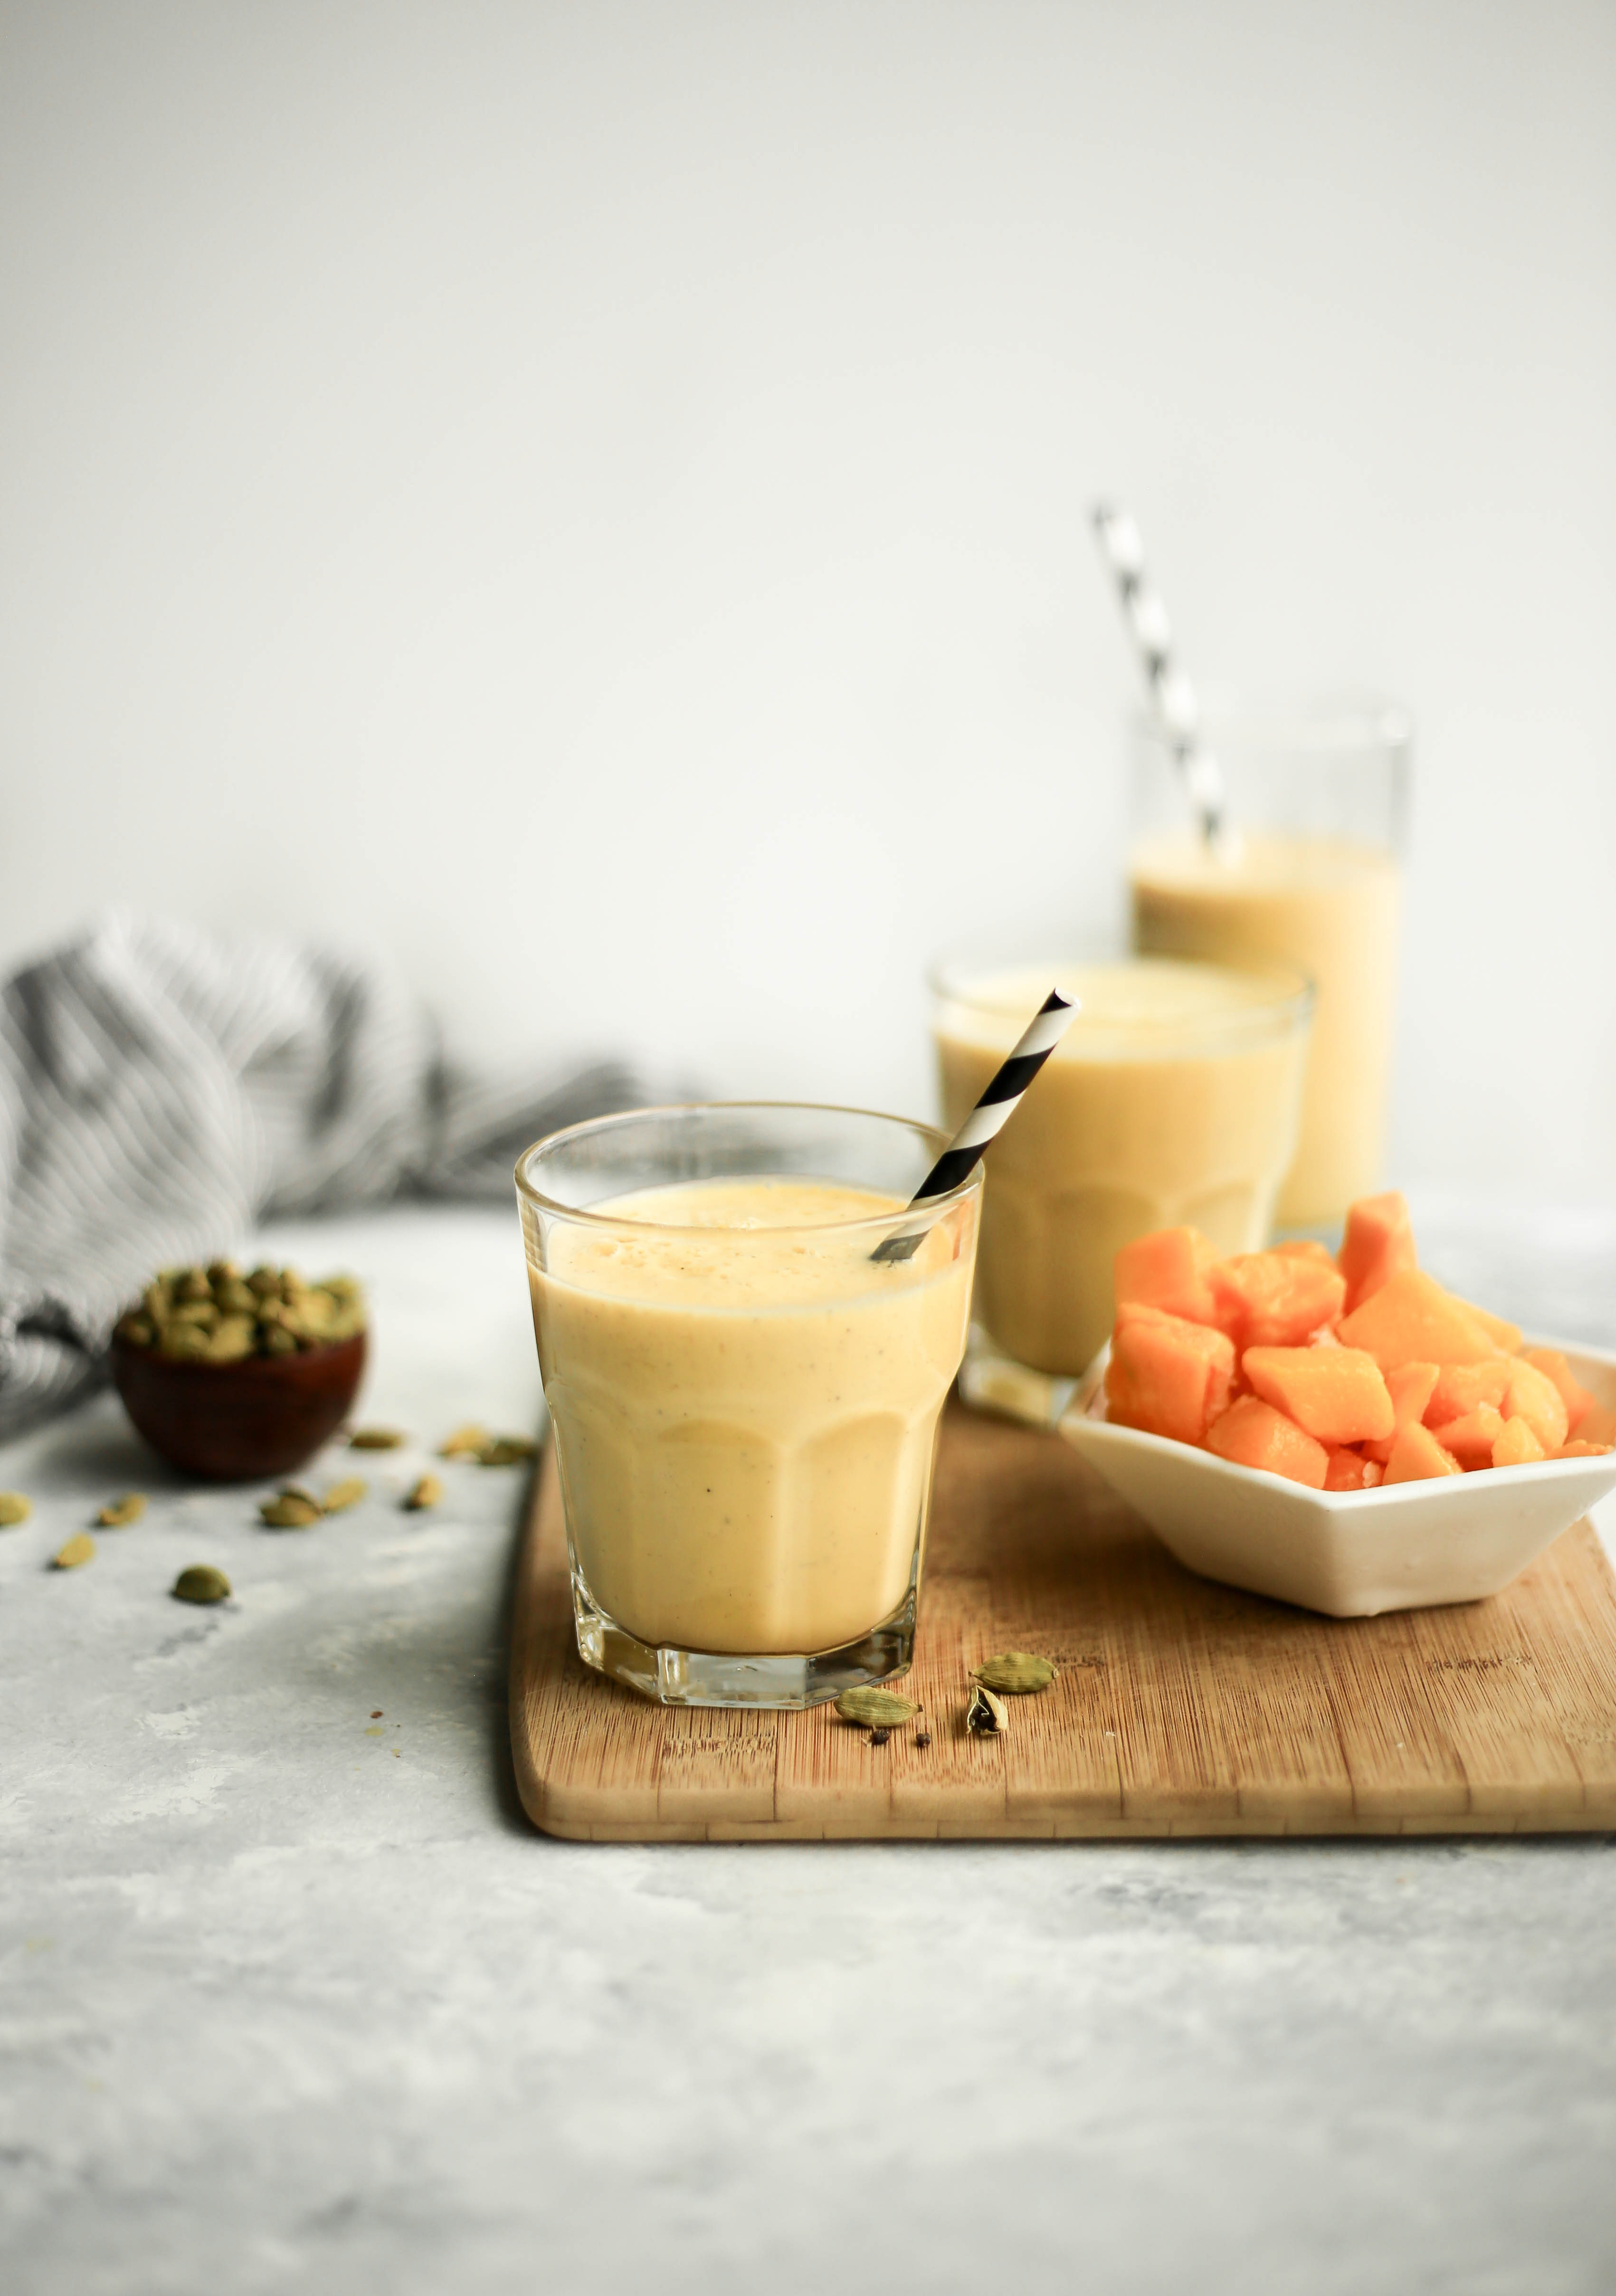 salty mango lassi - a refreshing summer drink with mango, black salt, yogurt, and cardamom